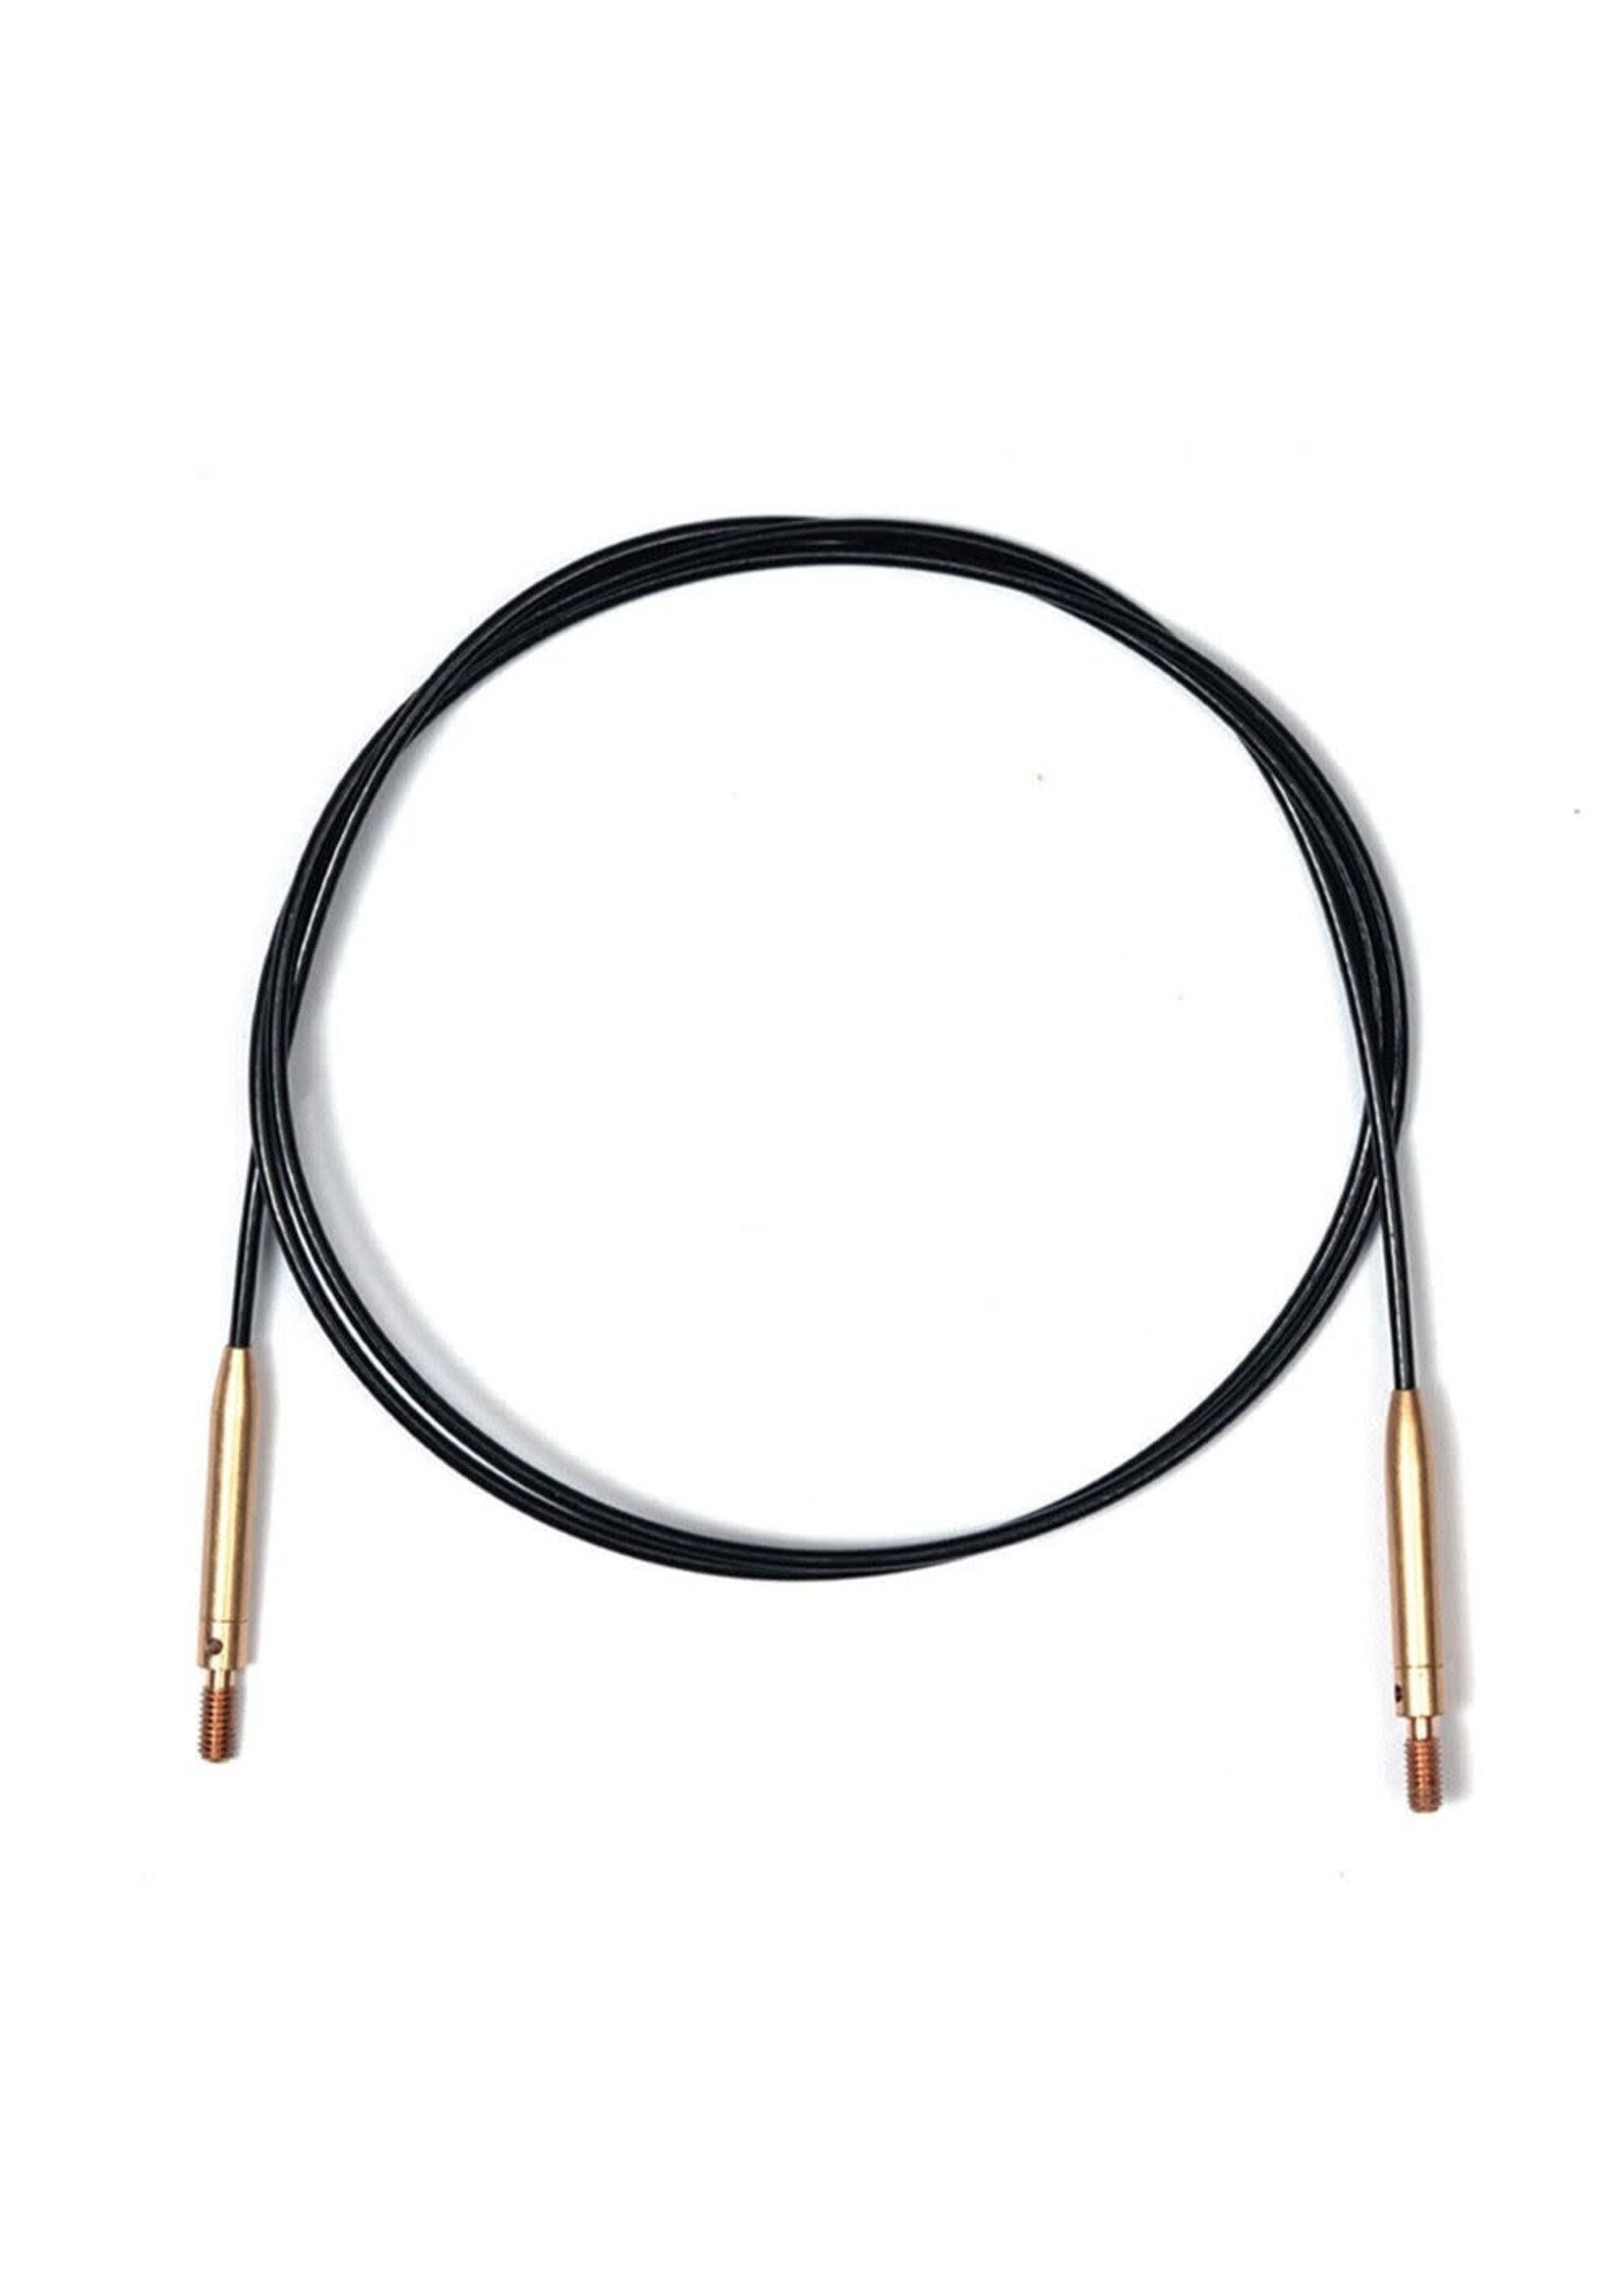 KnitPro KnitPro Fixed Verwis. kabel zwart voor 60cm naald